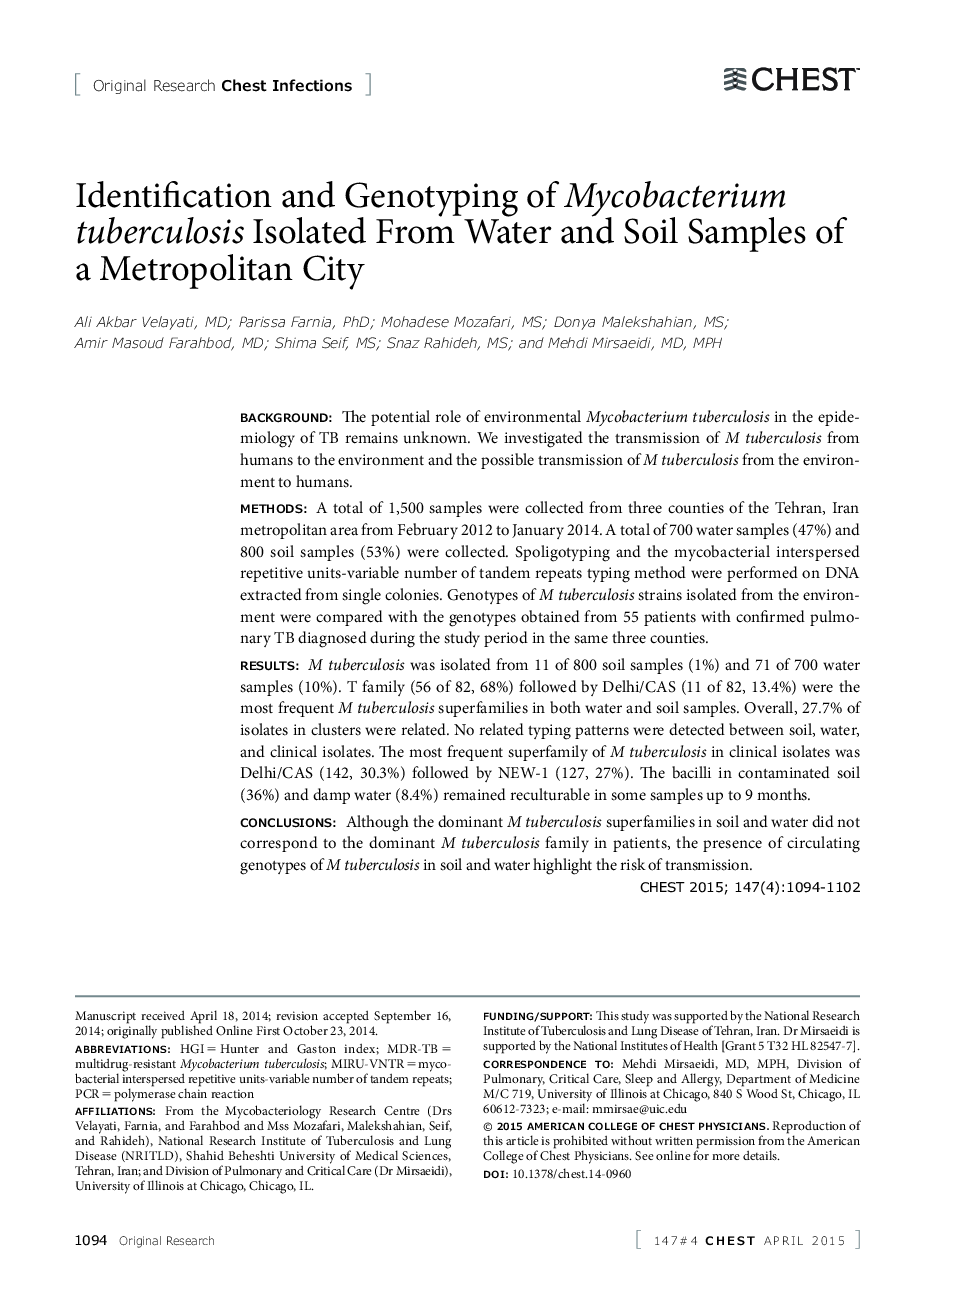 شناسایی و ژنوتایپ میکوباکتریوم توبرکلوز جدا شده از نمونه های آب و خاک یک شهر متروپولیتن 